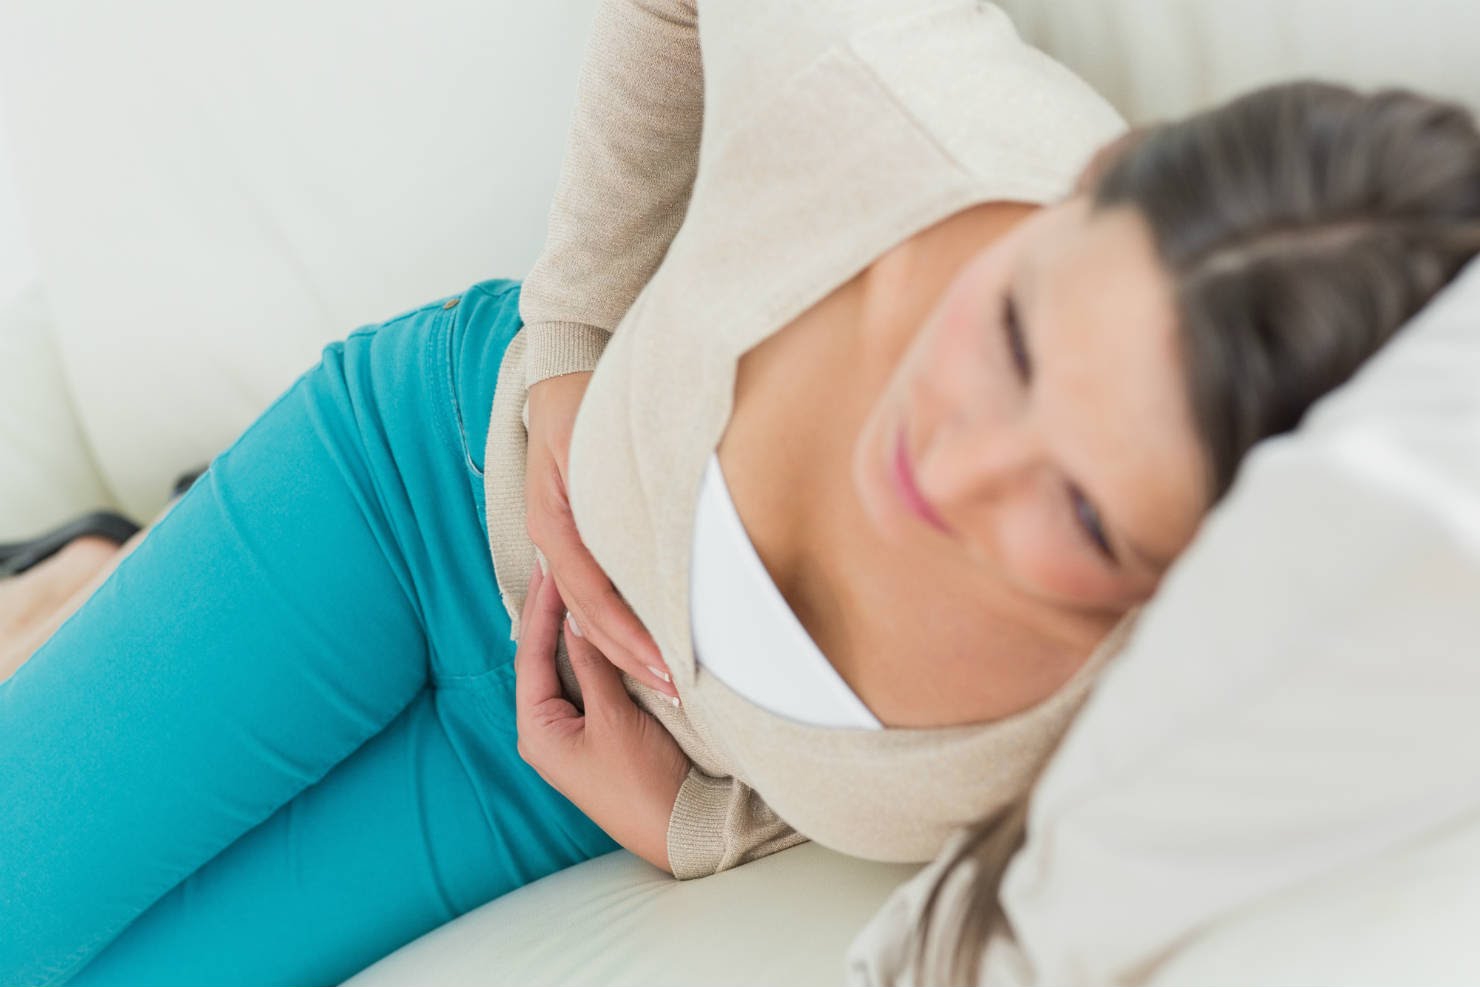 Đau bụng kinh thường có thể giảm đi sau khi tắm ấm hoặc dùng nhiệt kế ấm lên vùng bụng, trong khi đau bụng do mang thai có thể không giảm đi.
